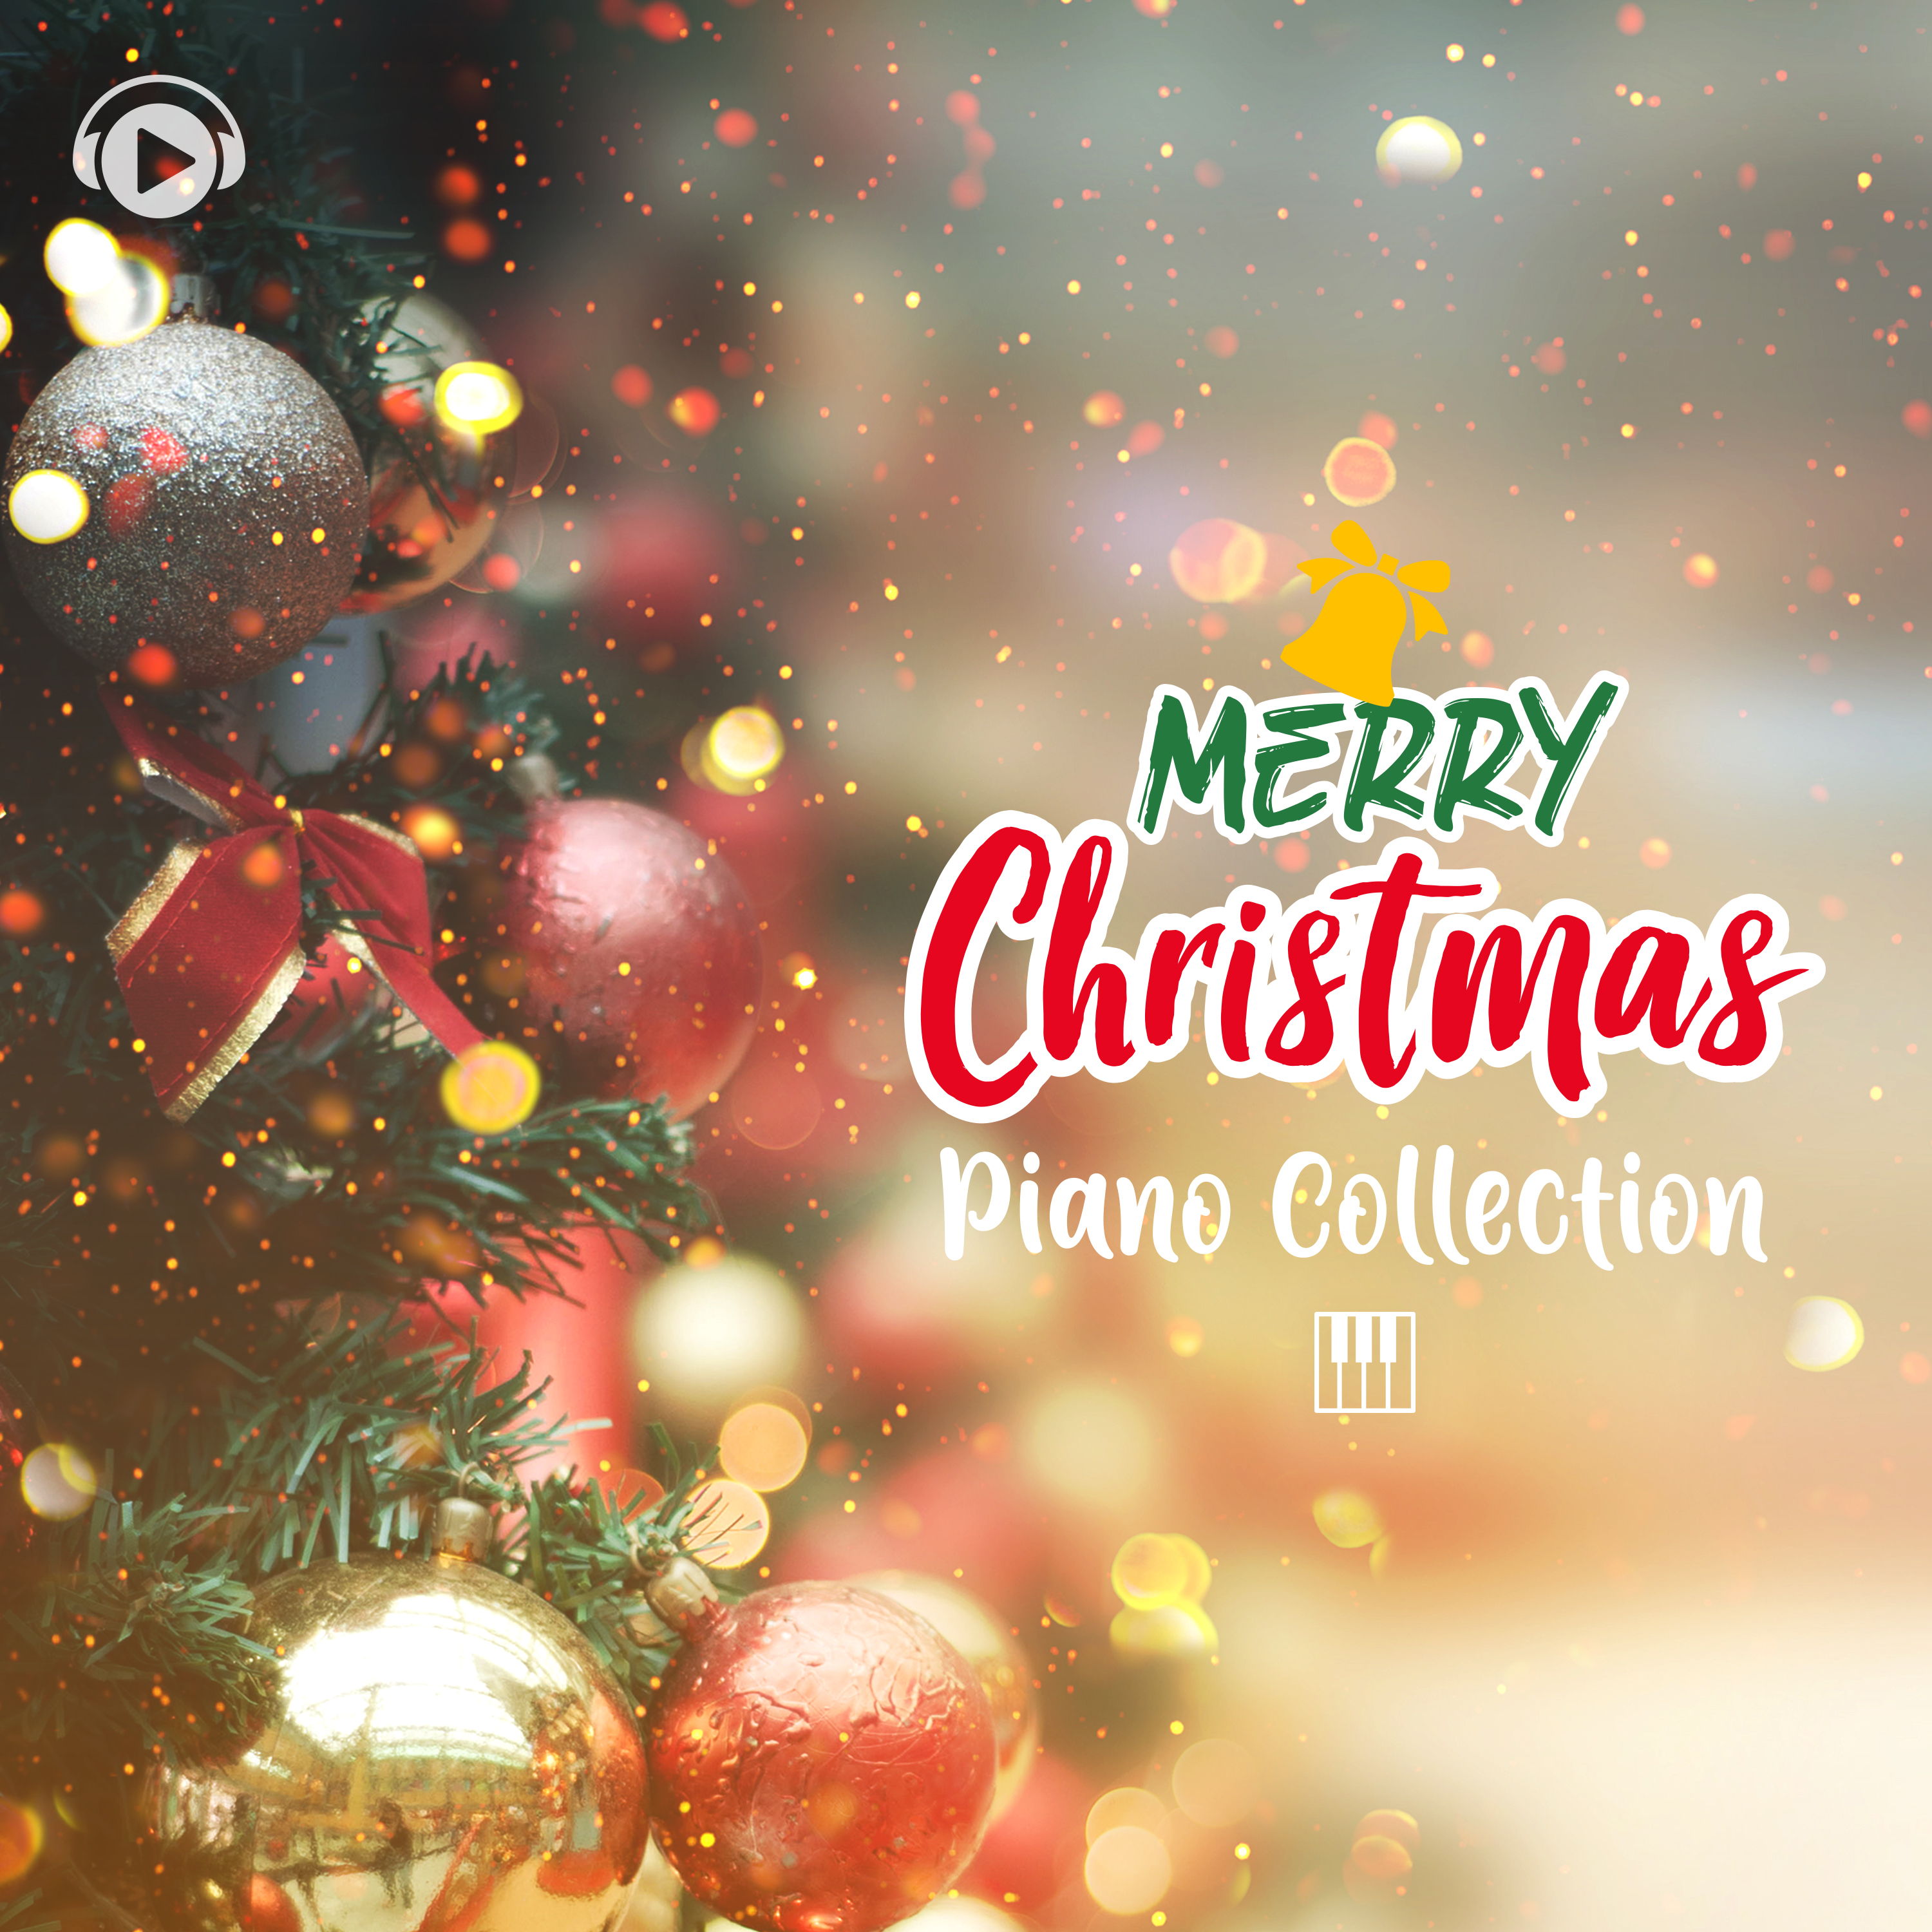 クリスマスの必須アイテム 誰もが知ってるクリスマスソングが癒しのピアノカバーになって登場 株 スターミュージック エンタテインメントのプレスリリース